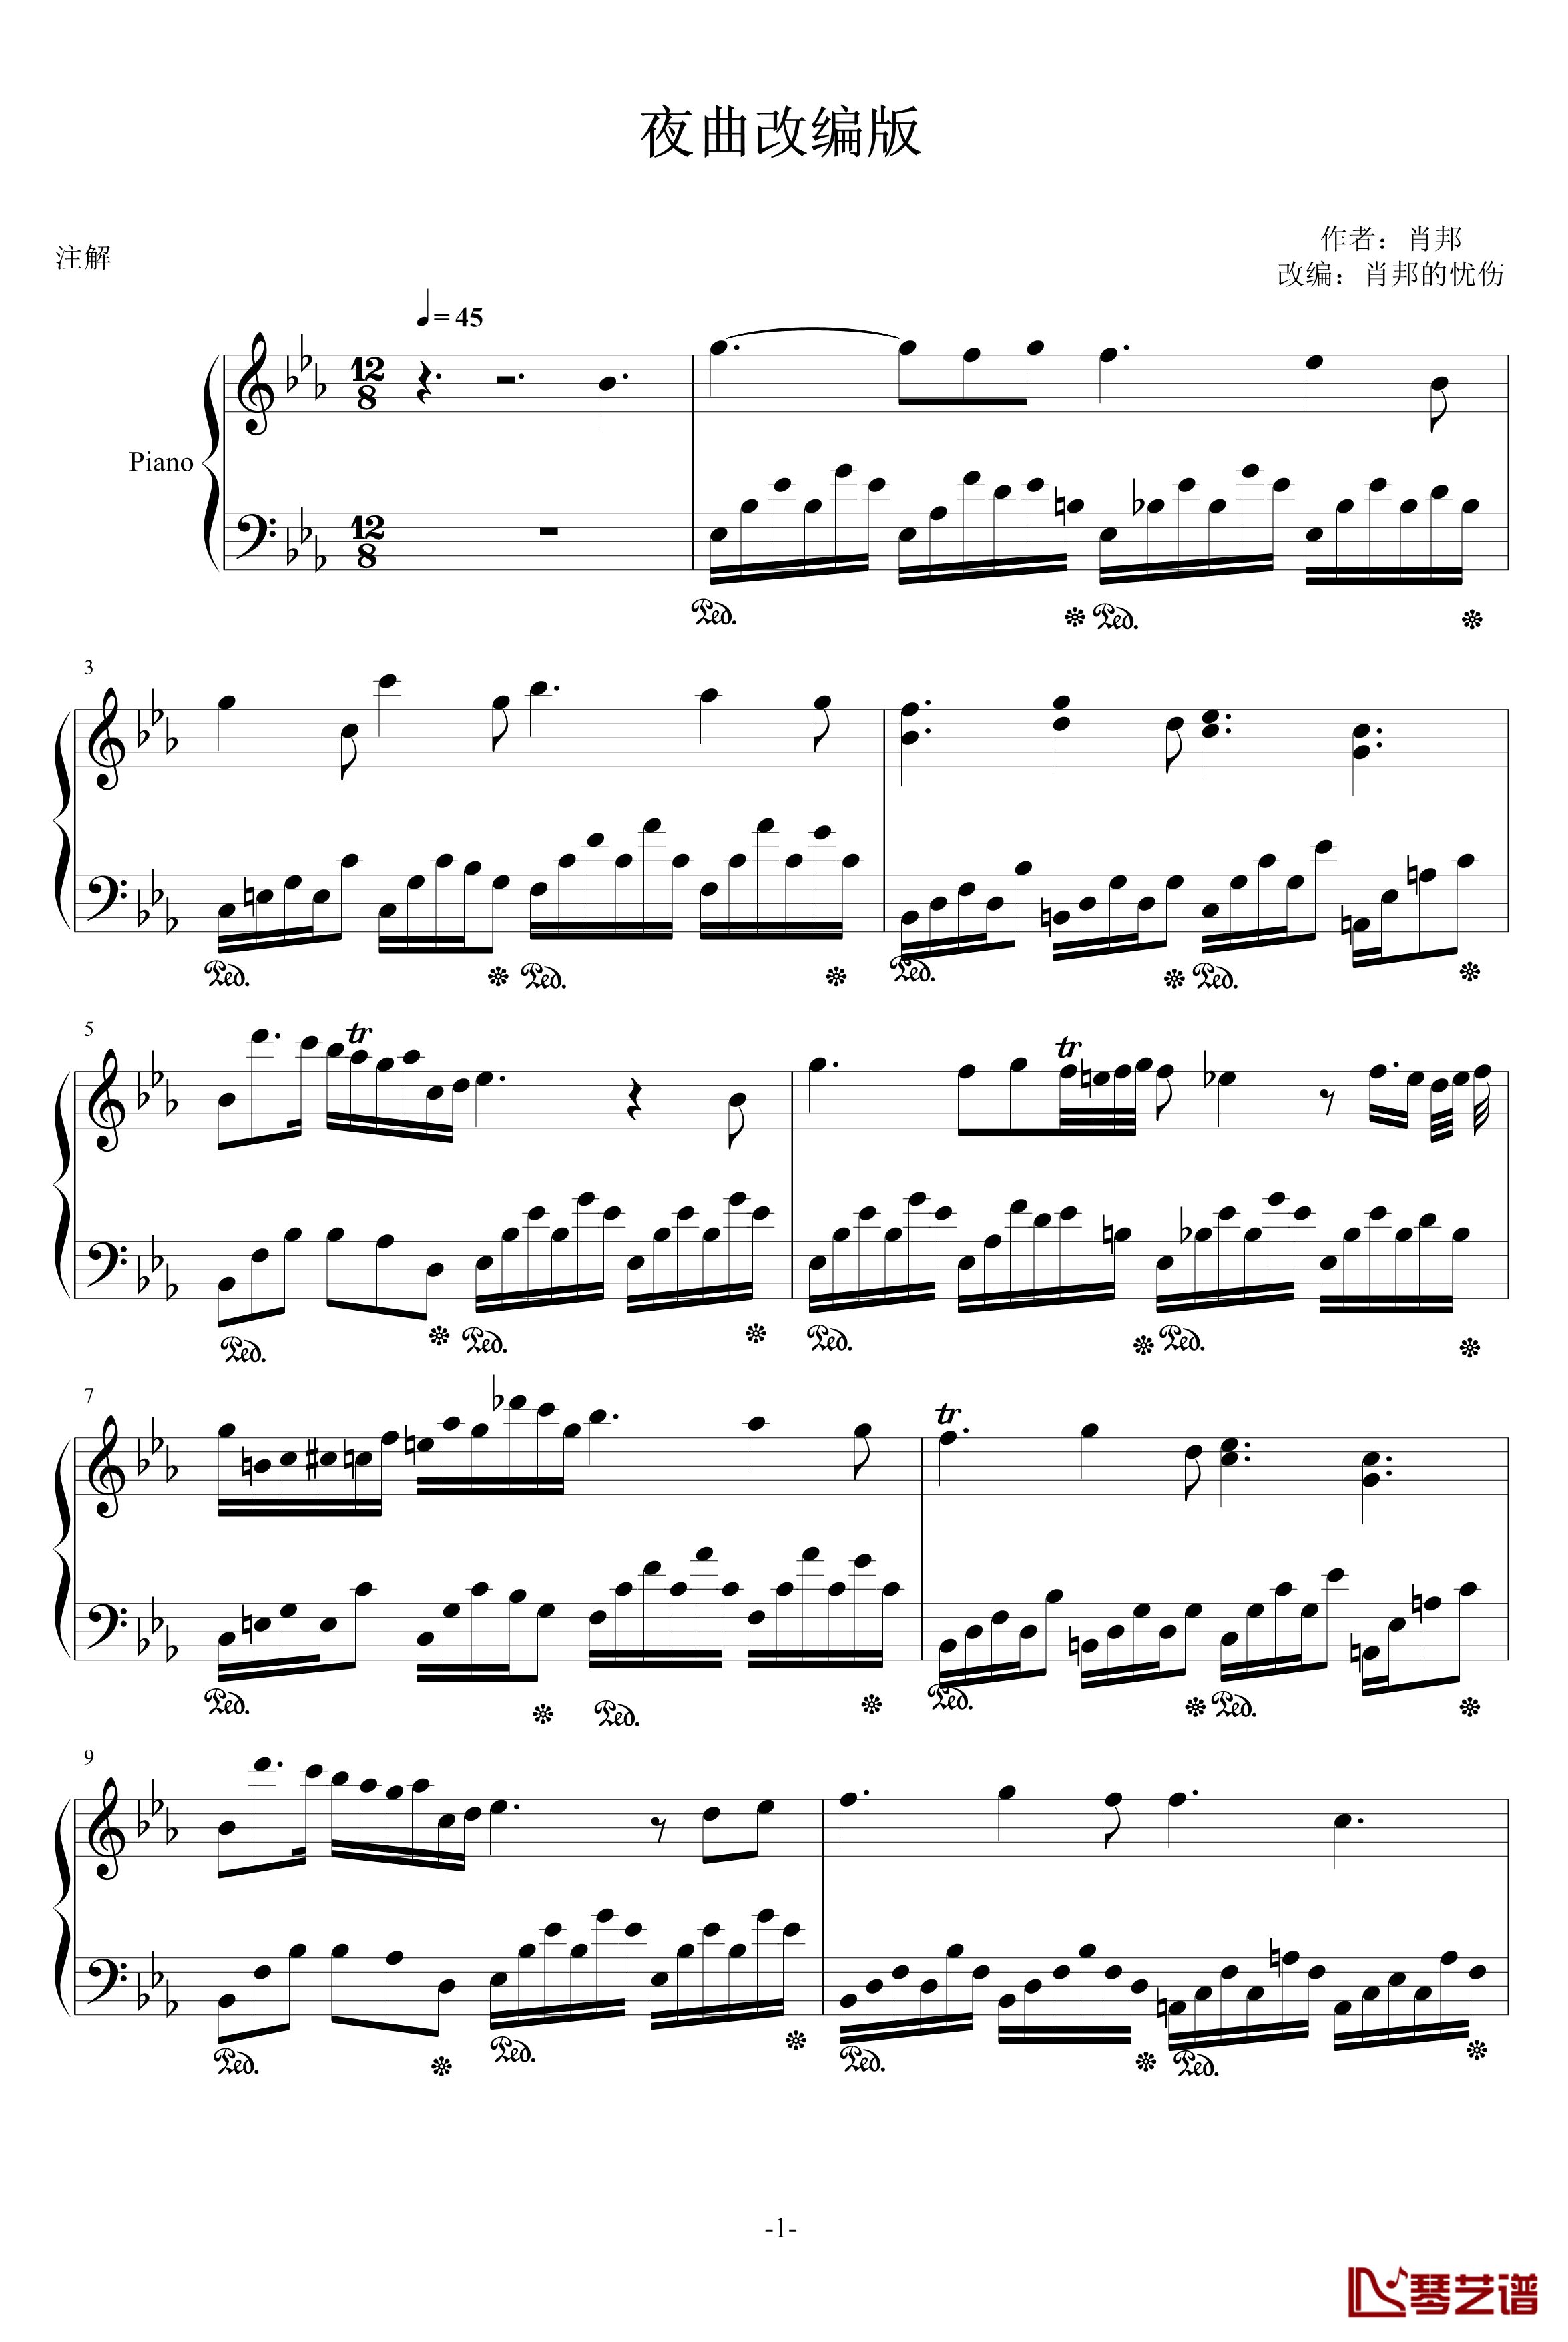 夜曲9-2钢琴谱-换一种风格，换一种感觉-肖邦-chopin1